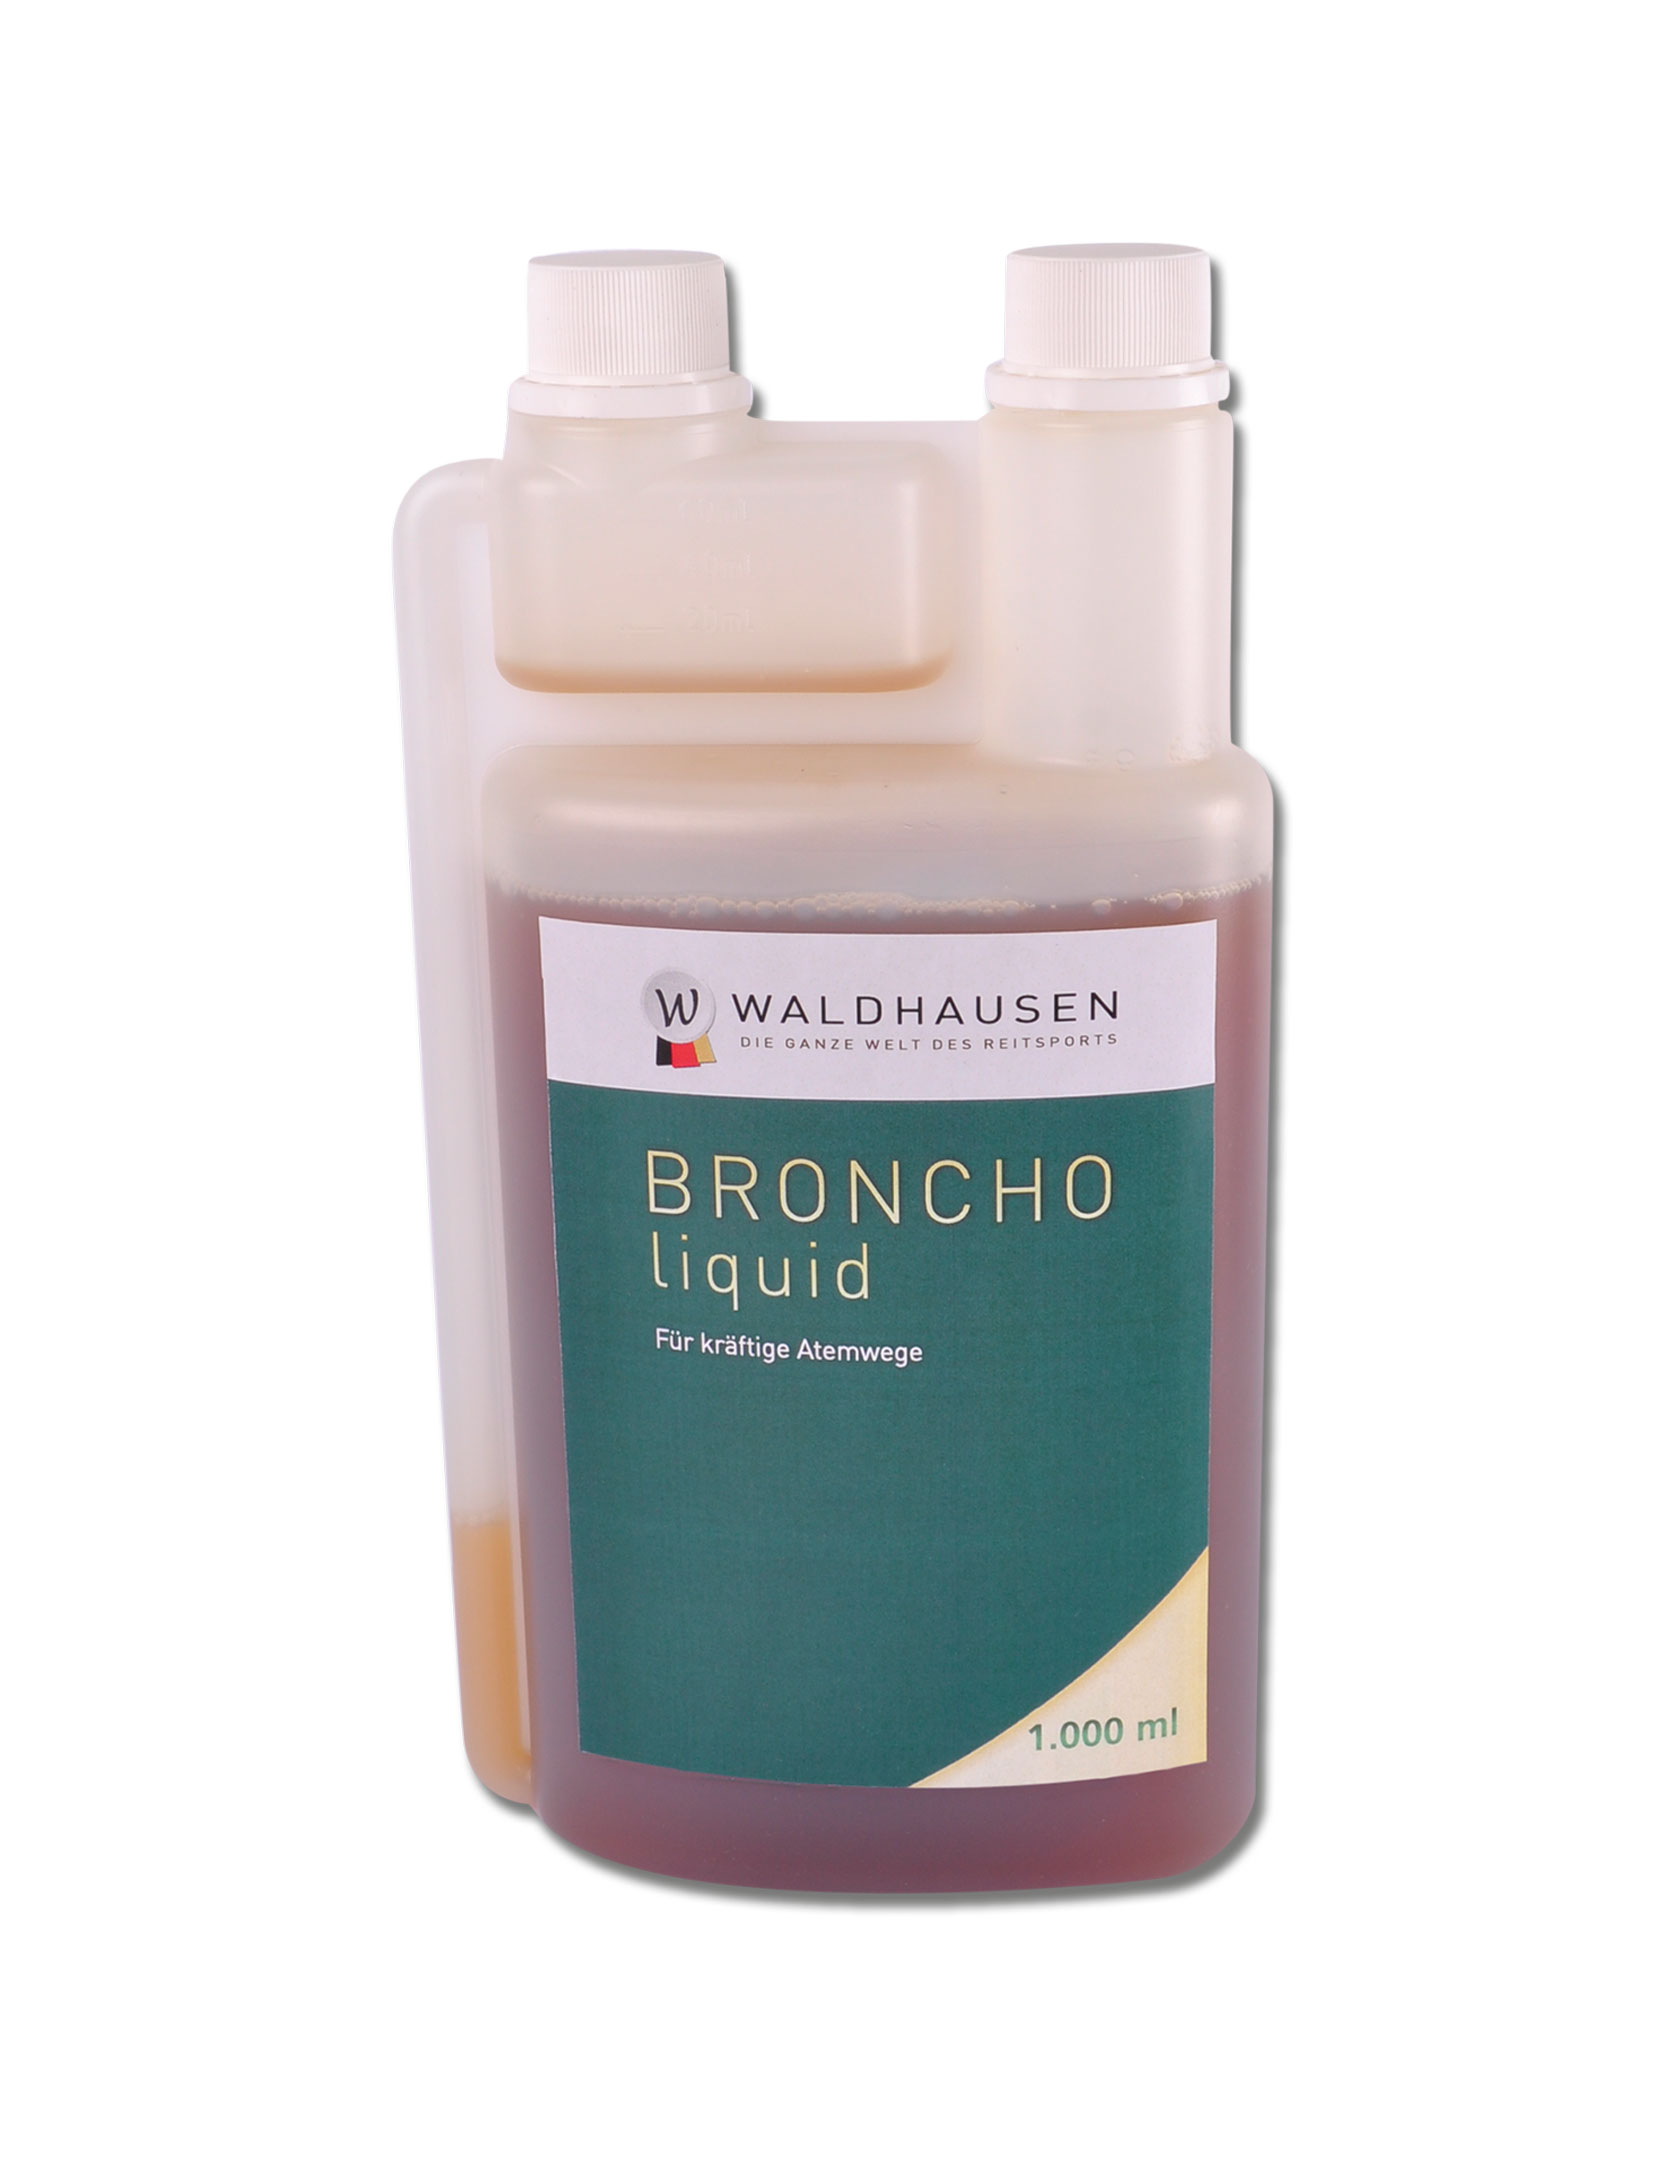 WALDHAUSEN Broncho liquid - Kräftigt die Atemwege